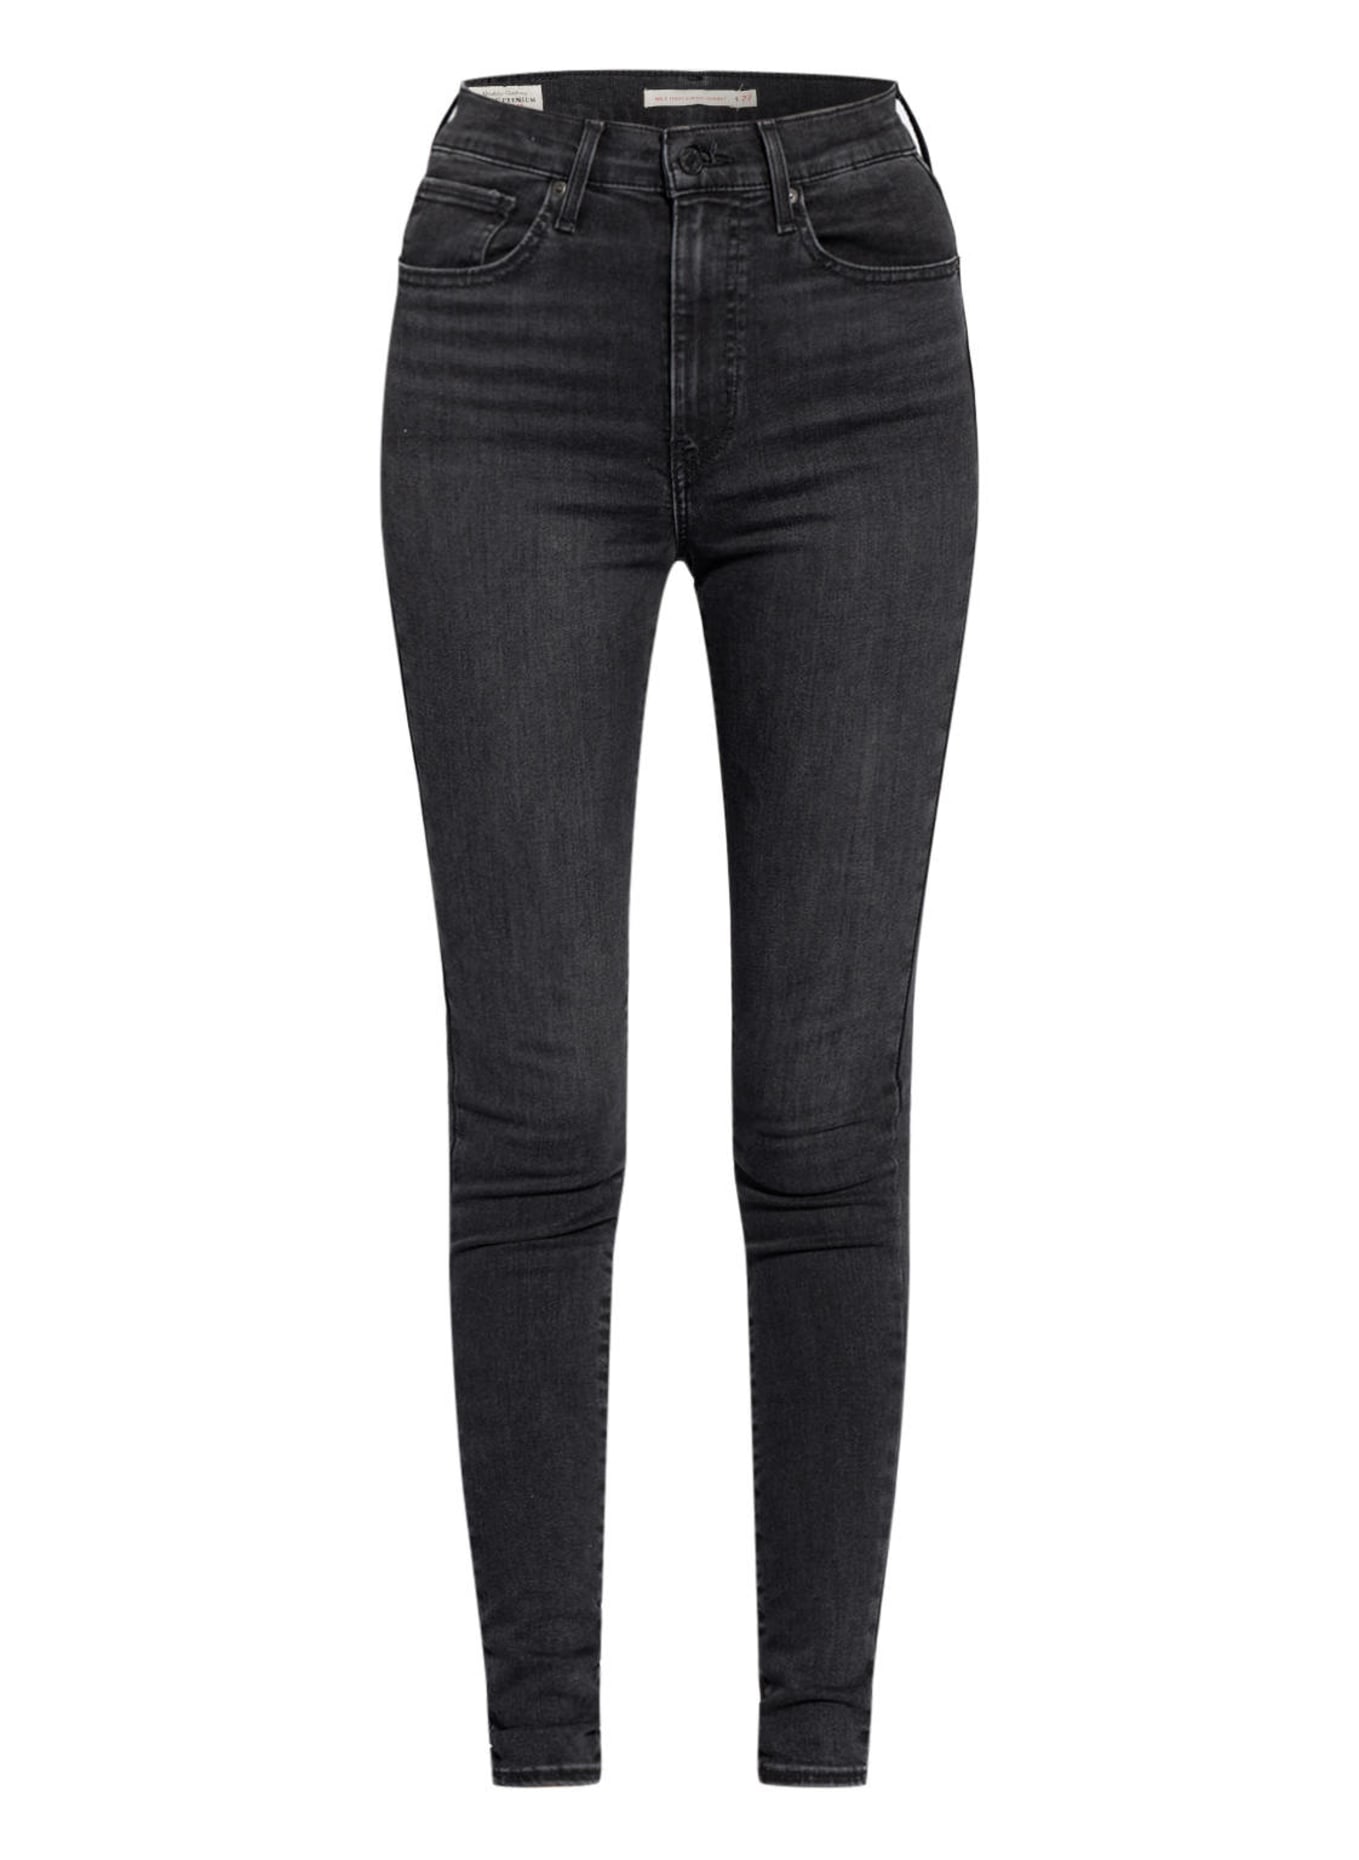 Levi's® Skinny Jeans MILE HIGH SUPER SKINNY , Farbe: 47 Blacks (Bild 1)